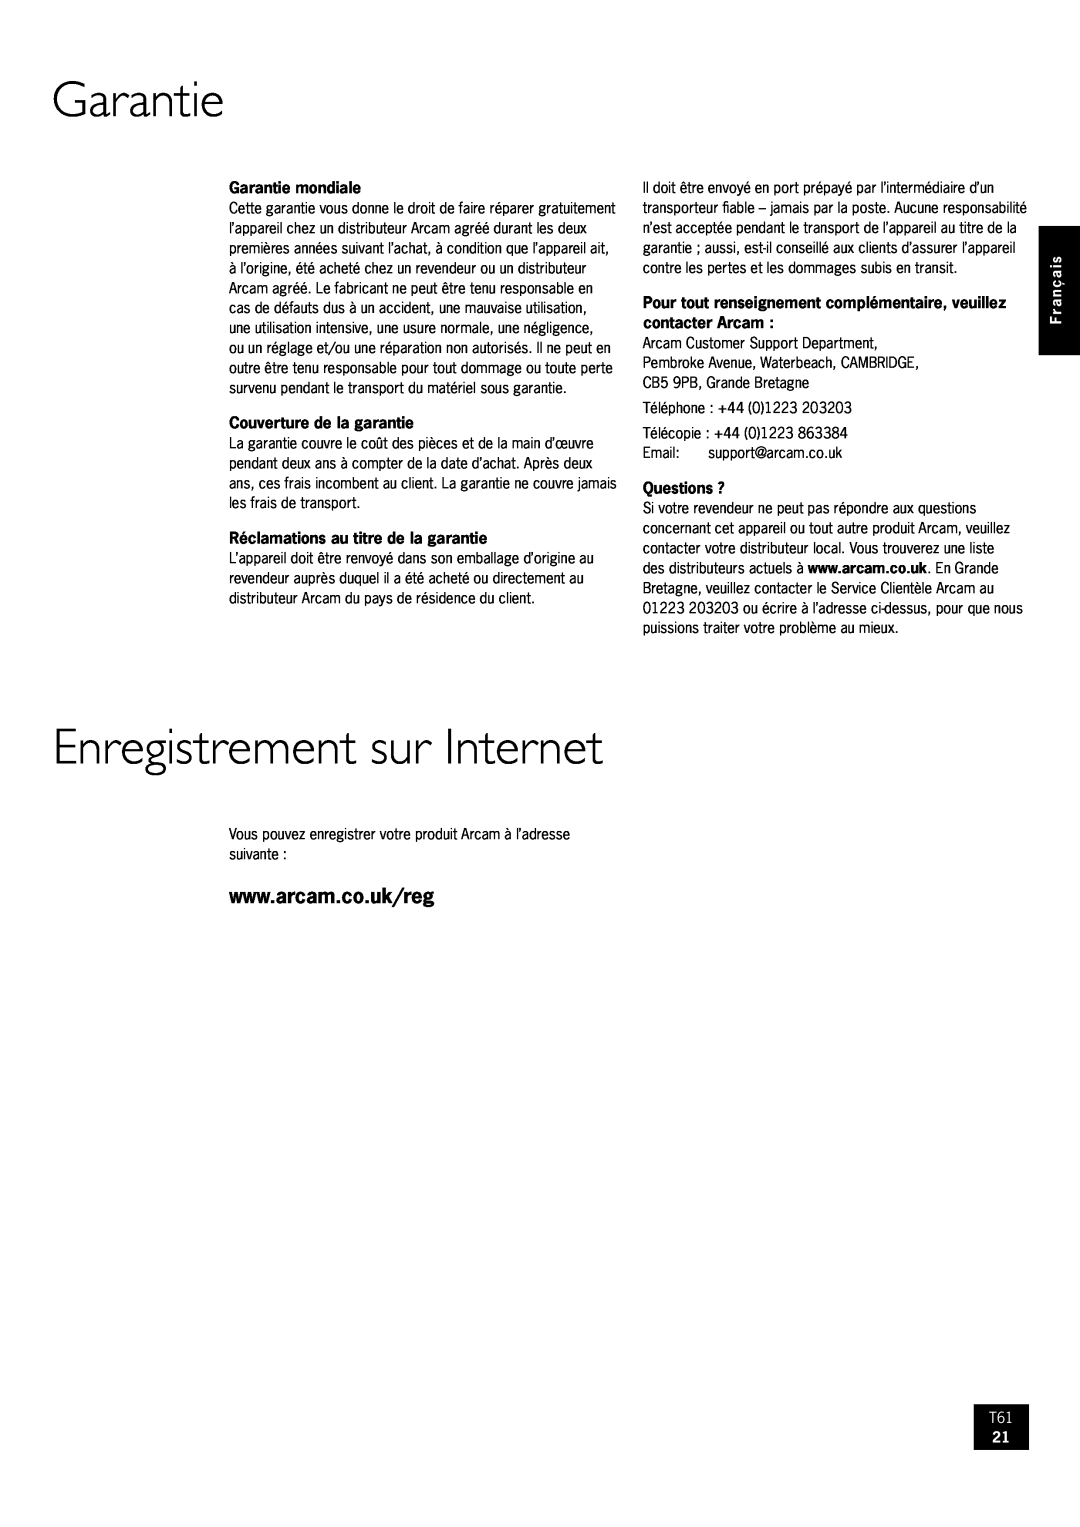 Arcam AM/FM Tuner T61 manual Garantie, Enregistrement sur Internet, Français 